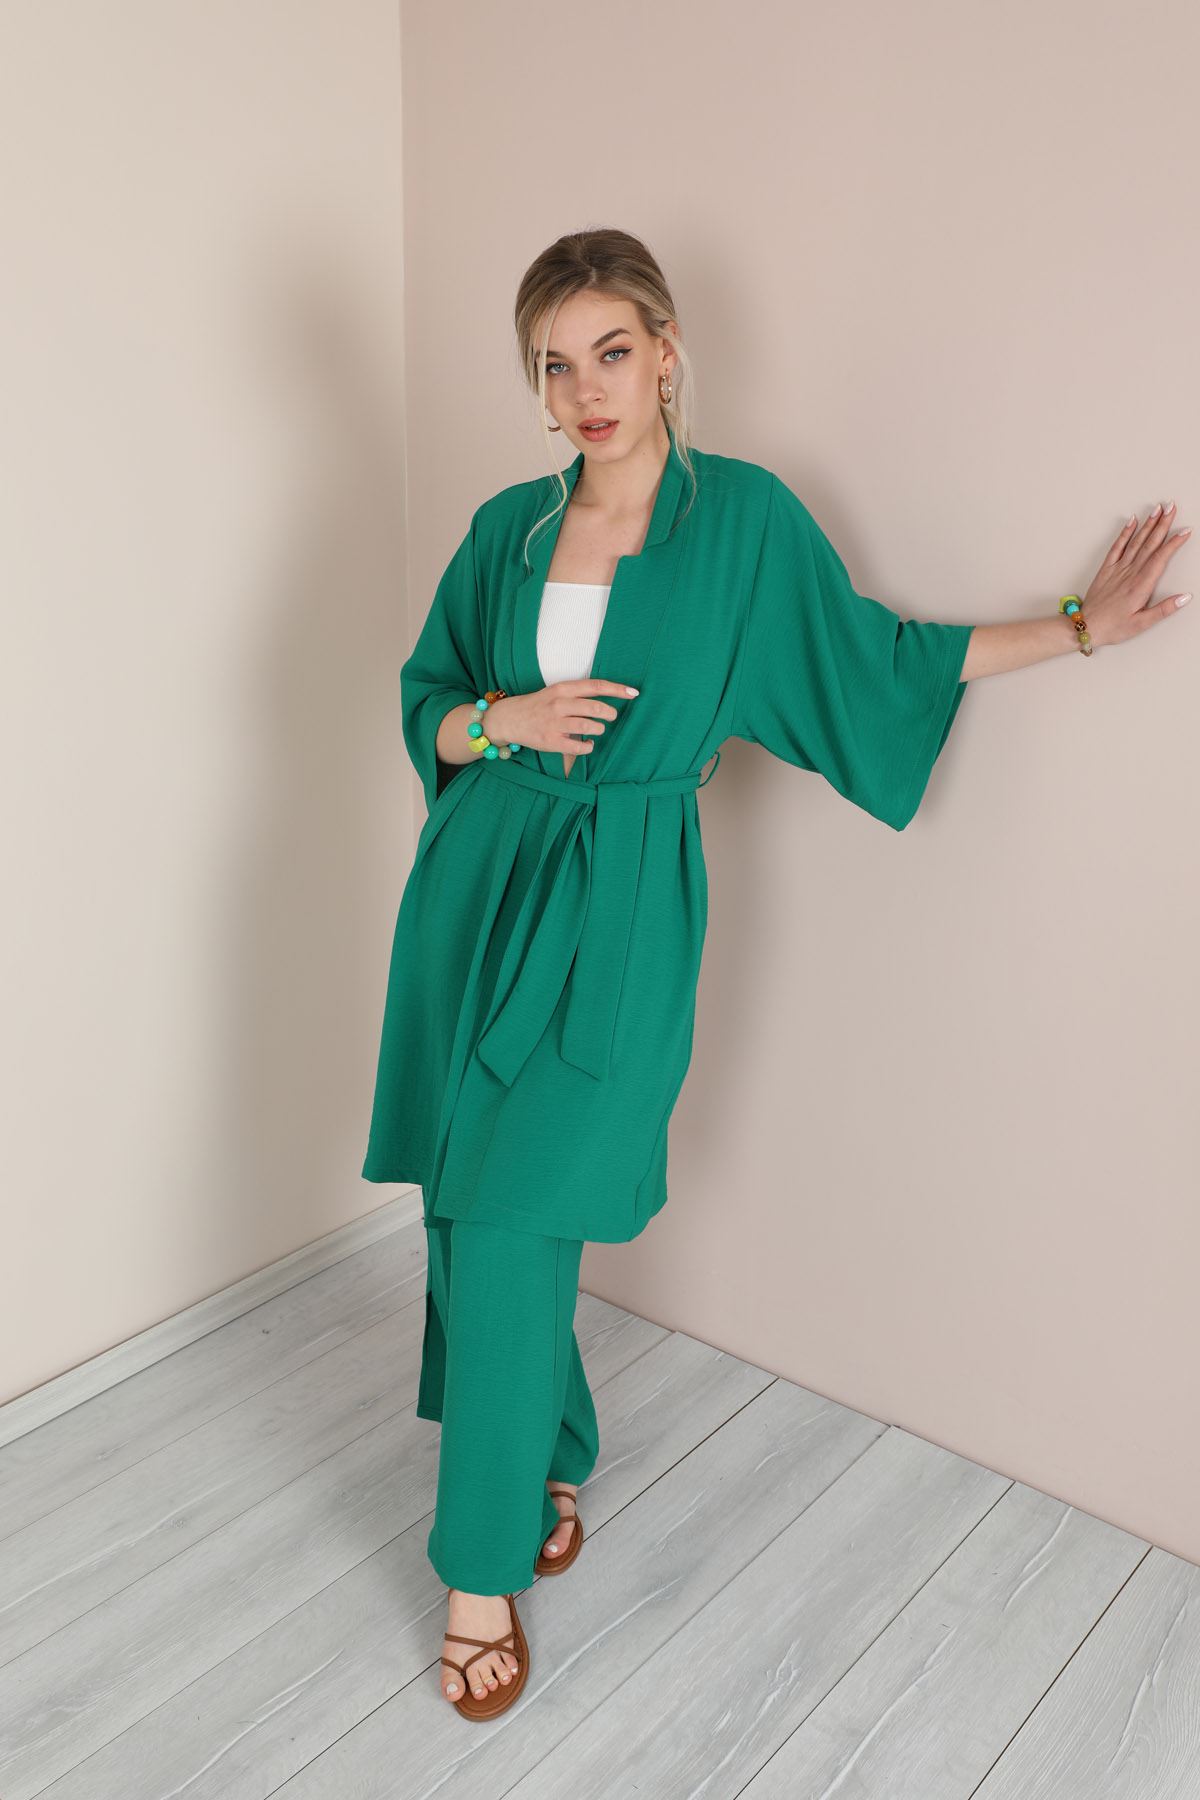 Linen Fabric Long Sleeve Revere Collar Hip Height Comfy Women Jacket-Emerald Green